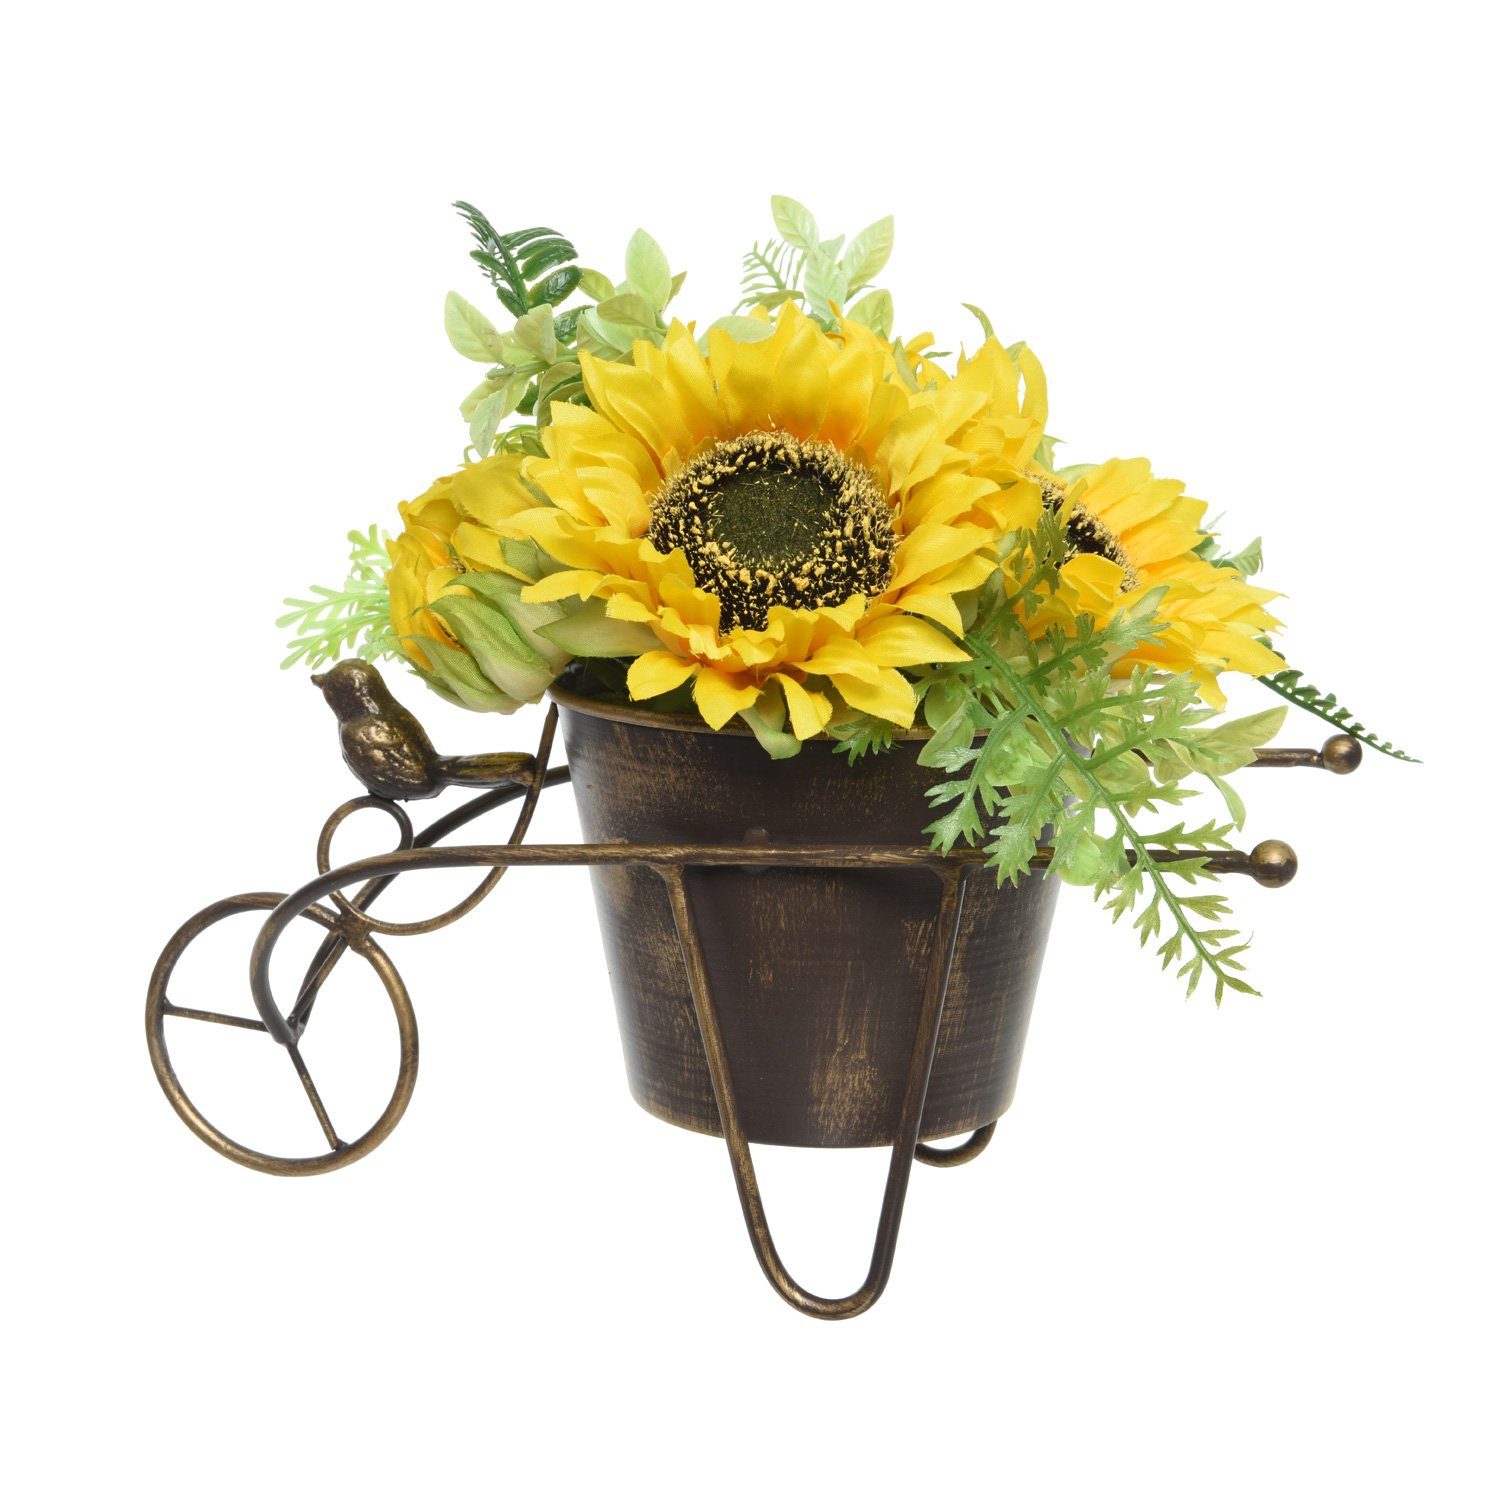 Kunstblume Sonnenblumen Topf MARELIDA, gelb, Topfpflanze cm Höhe 23 Dekoblumen H: 23cm Kunstblumen im